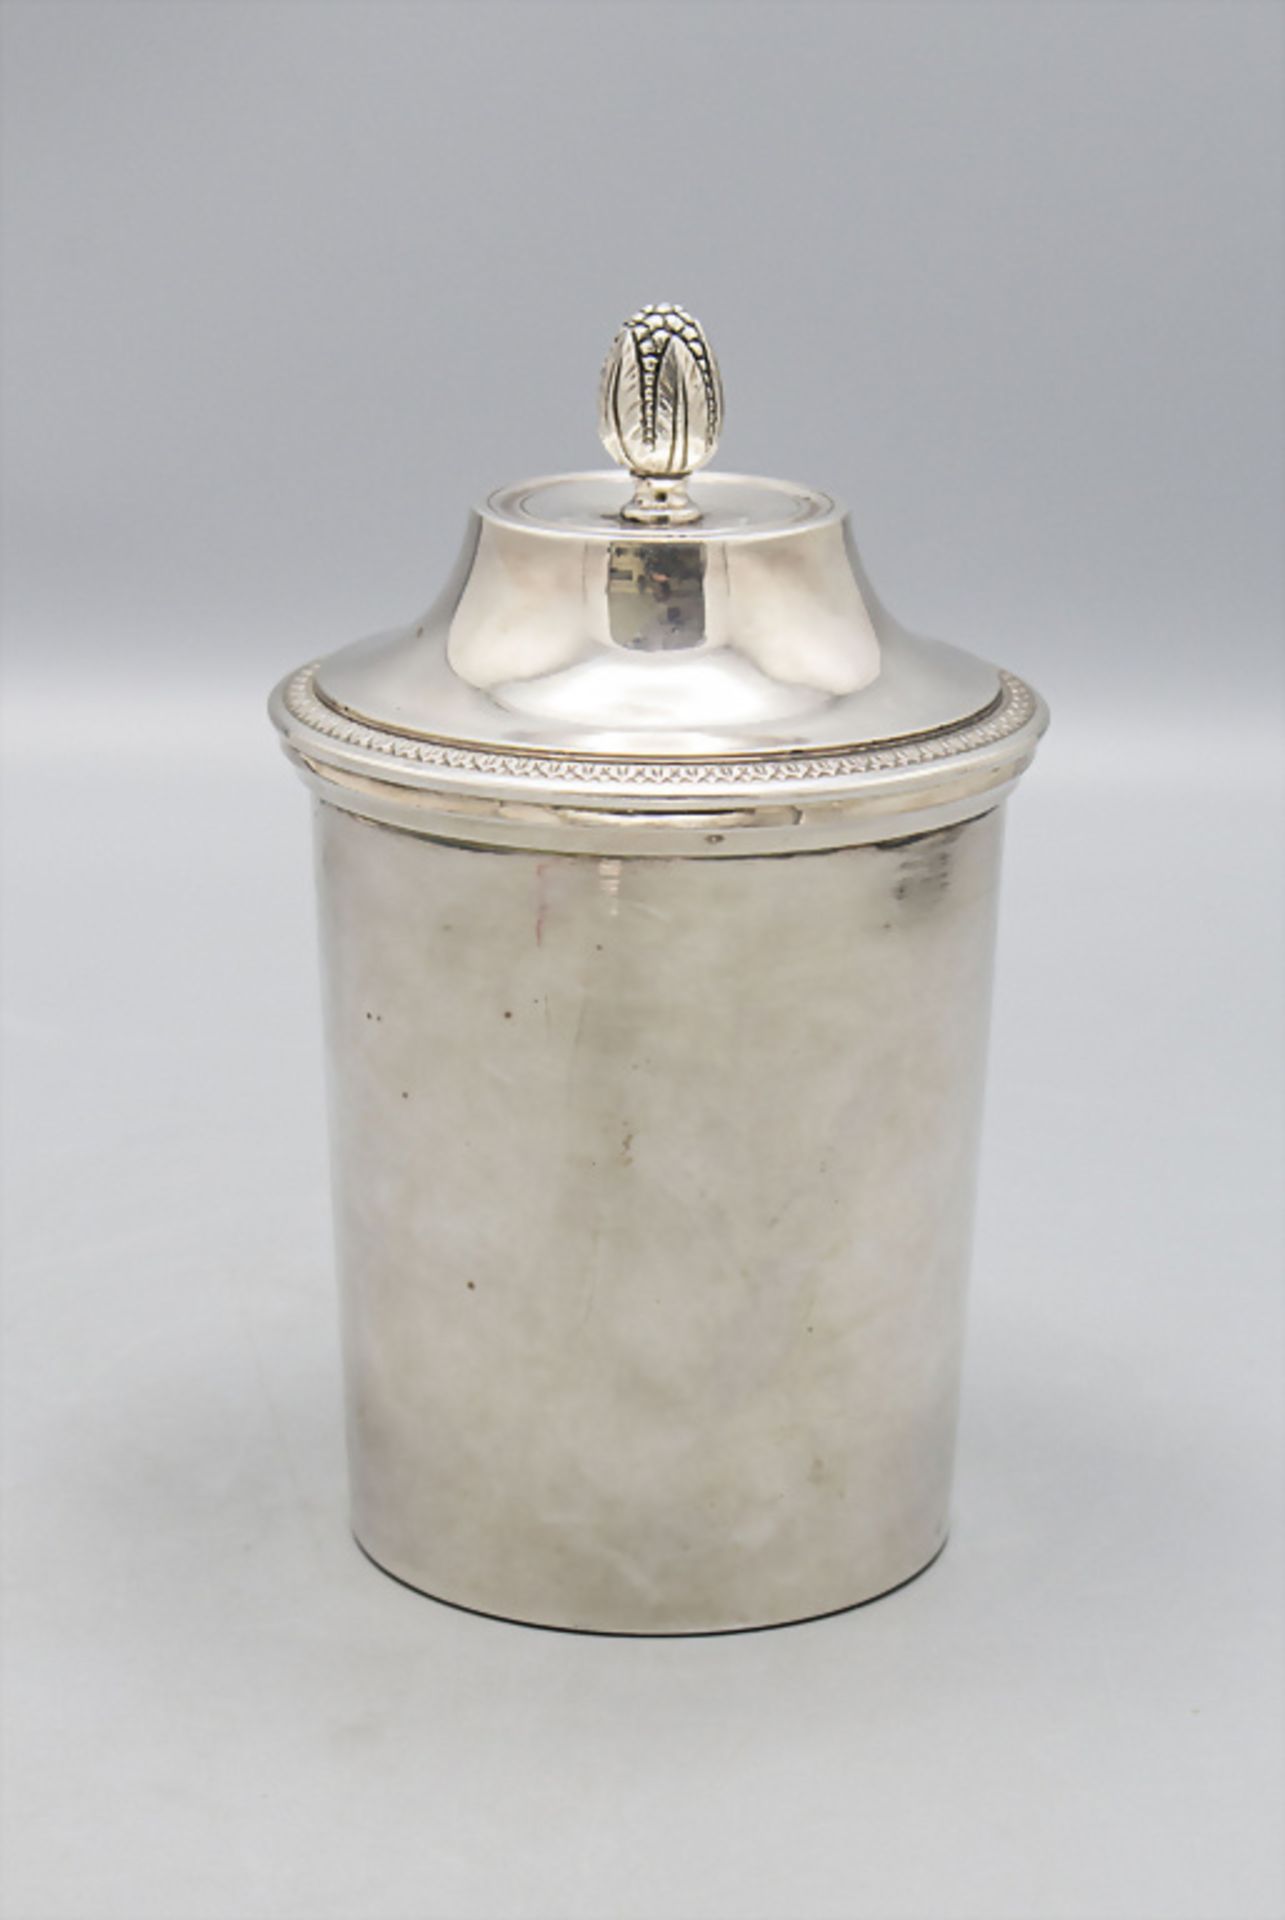 Deckelgefäß für heiße Milch / Laitière en argent massif / A silver lidded pot for hot milk ... - Image 3 of 8